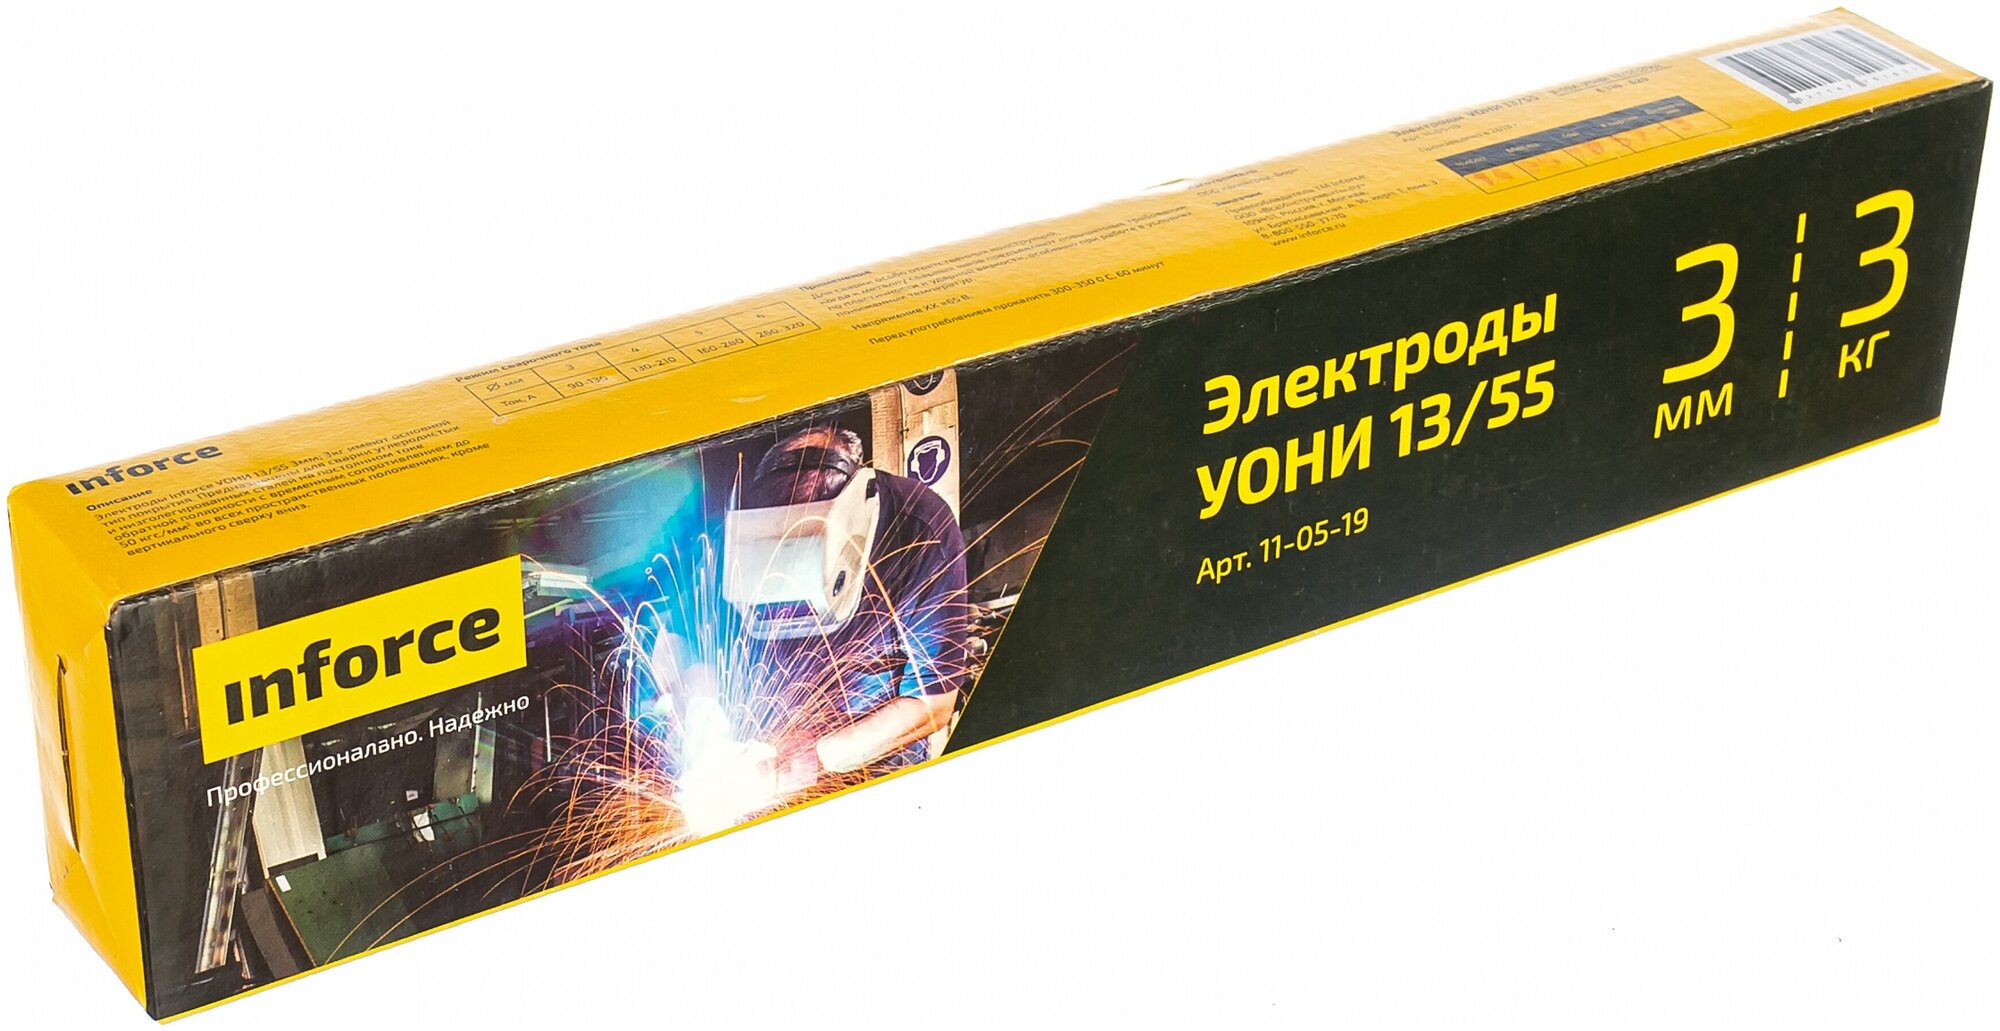 Электрод УОНИ 13/55 (3 мм; 3 кг) Inforce 11-05-19